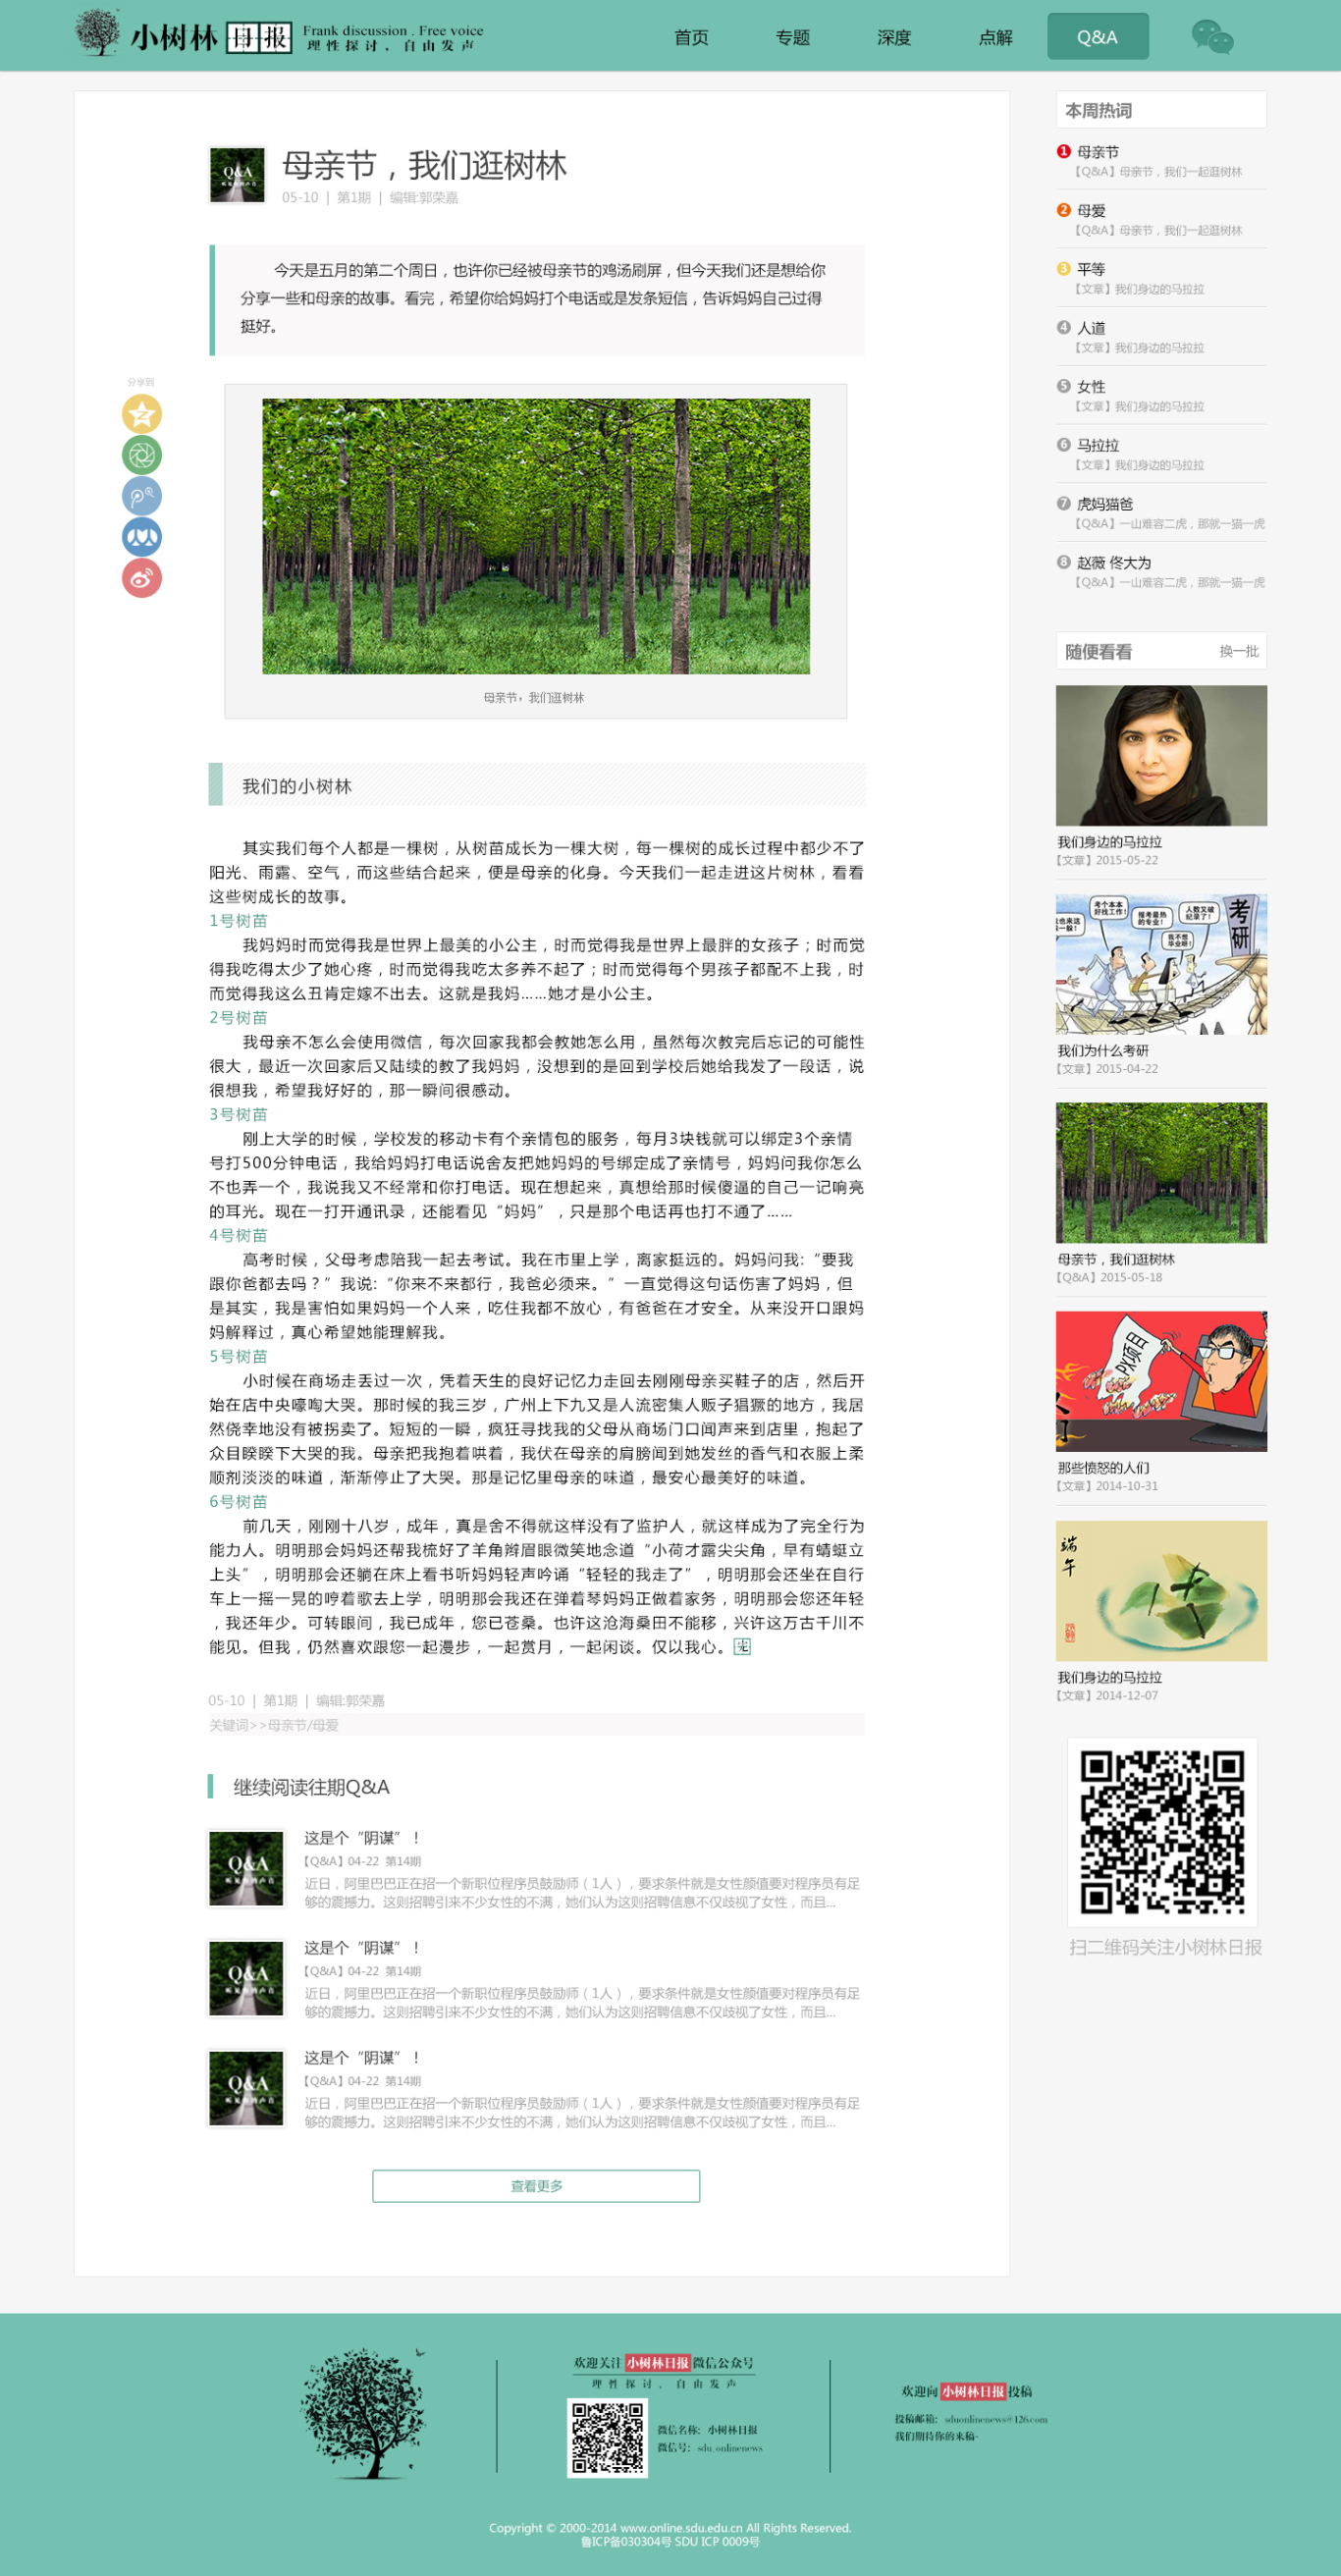  小樹林日報的網頁設計圖3